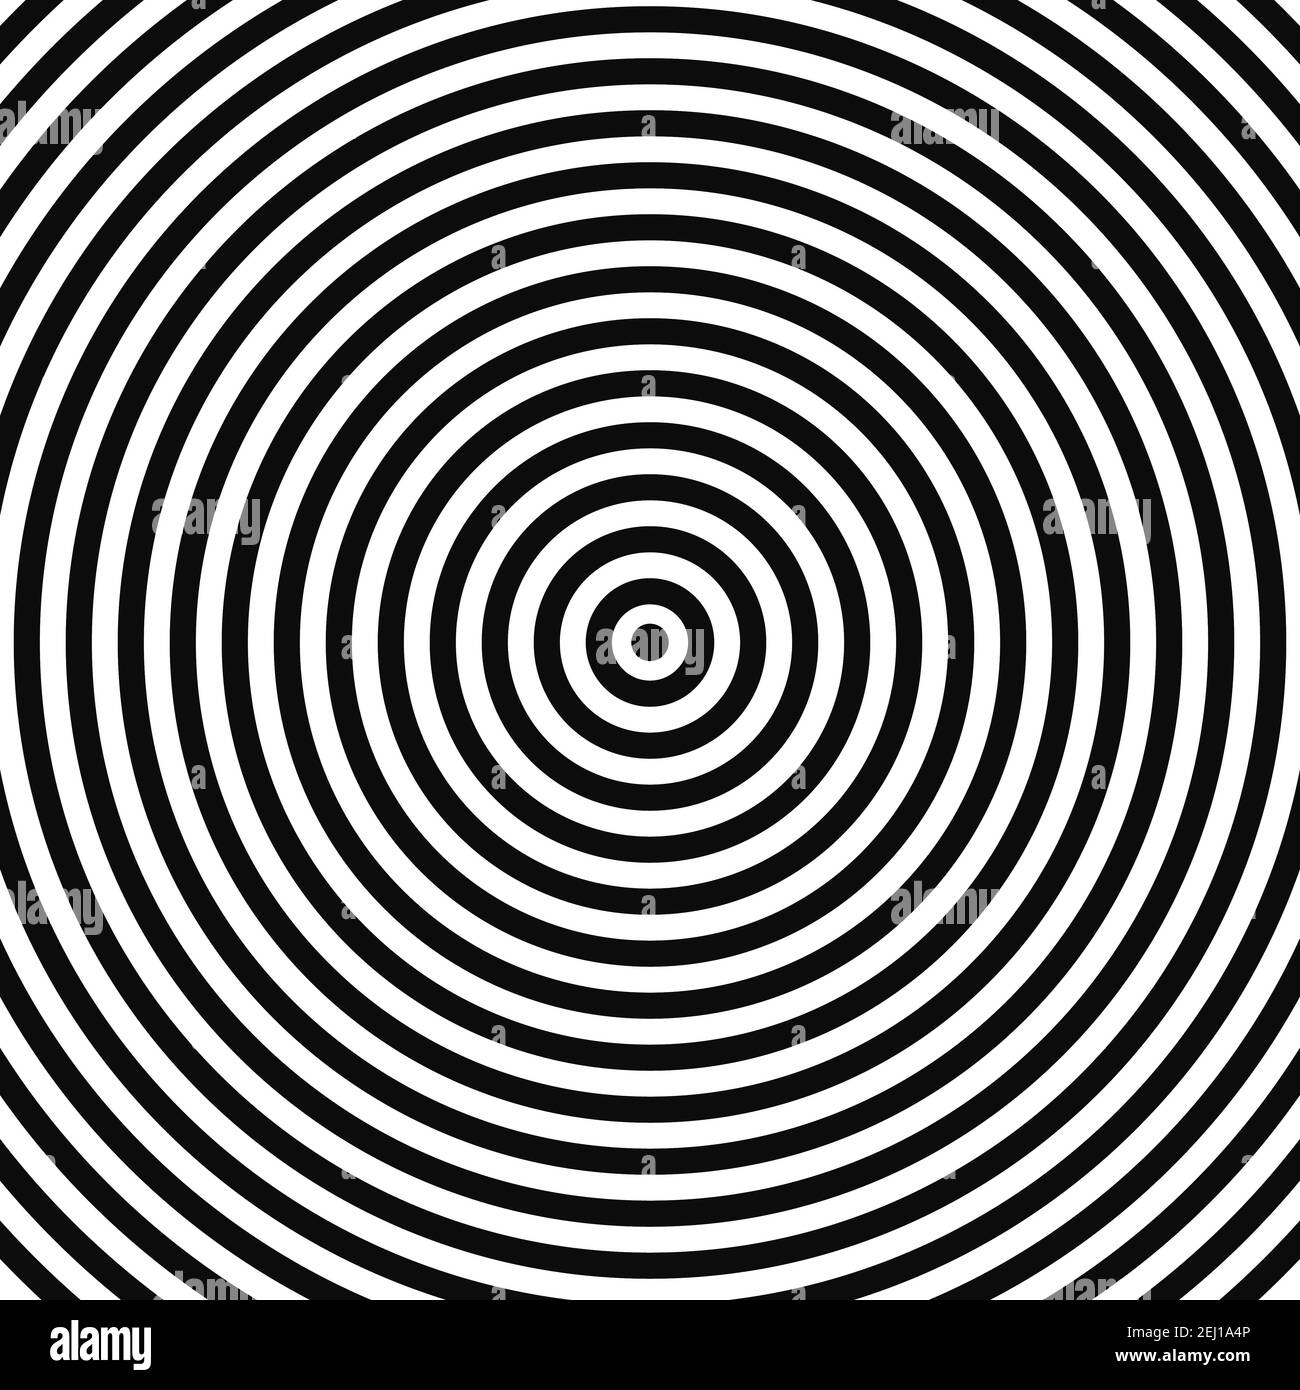 Conception abstraite de vecteur d'arrière-plan d'illusion optique. Toile de fond noire et blanche à rayures psychédéliques. Modèle hypnotique. Arrière-plan de style anneau blanc et noir. Vecteur Illustration de Vecteur